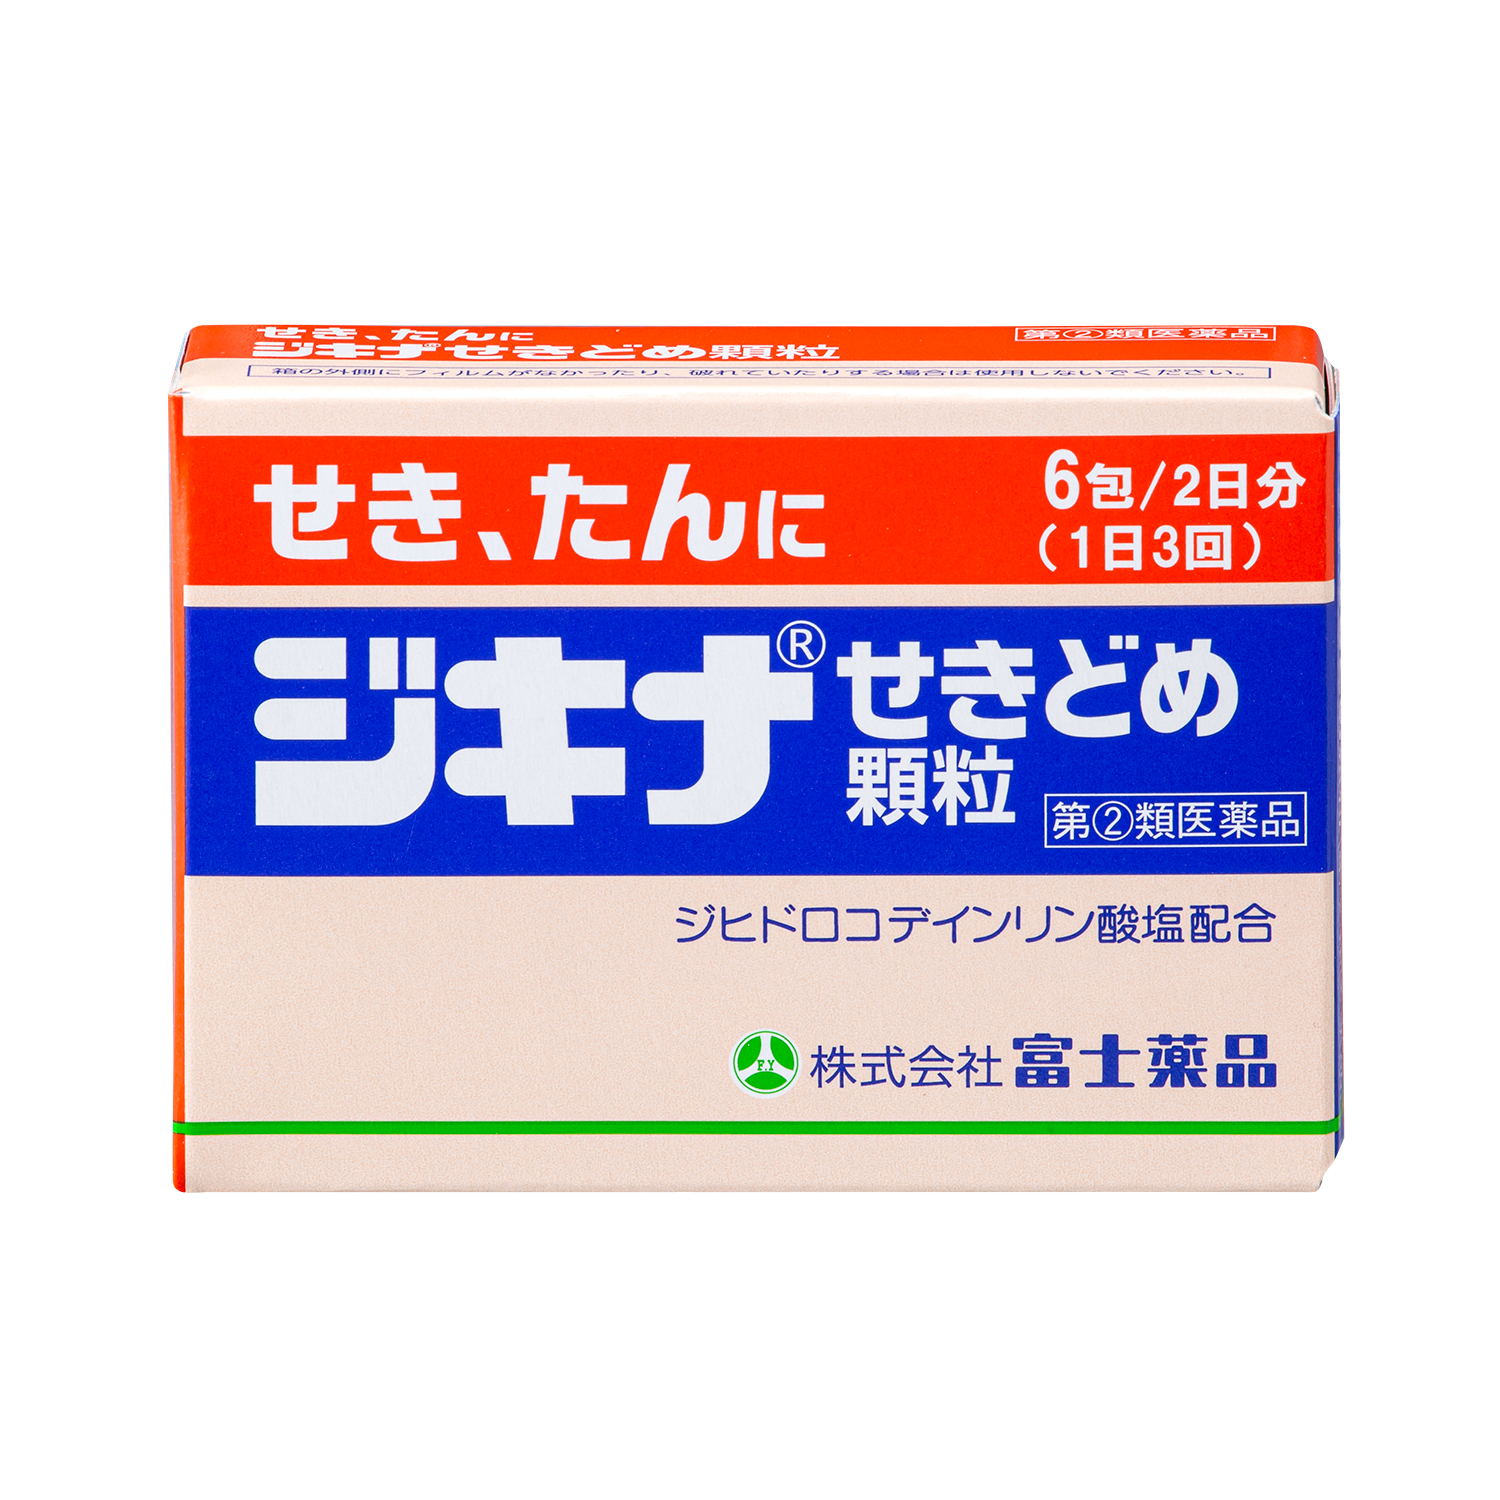 207円 日本メーカー新品 クラシエ薬品 こども咳止め漢方ゼリー 2日分 10g×6包 子ども用 せきに 漢方製剤